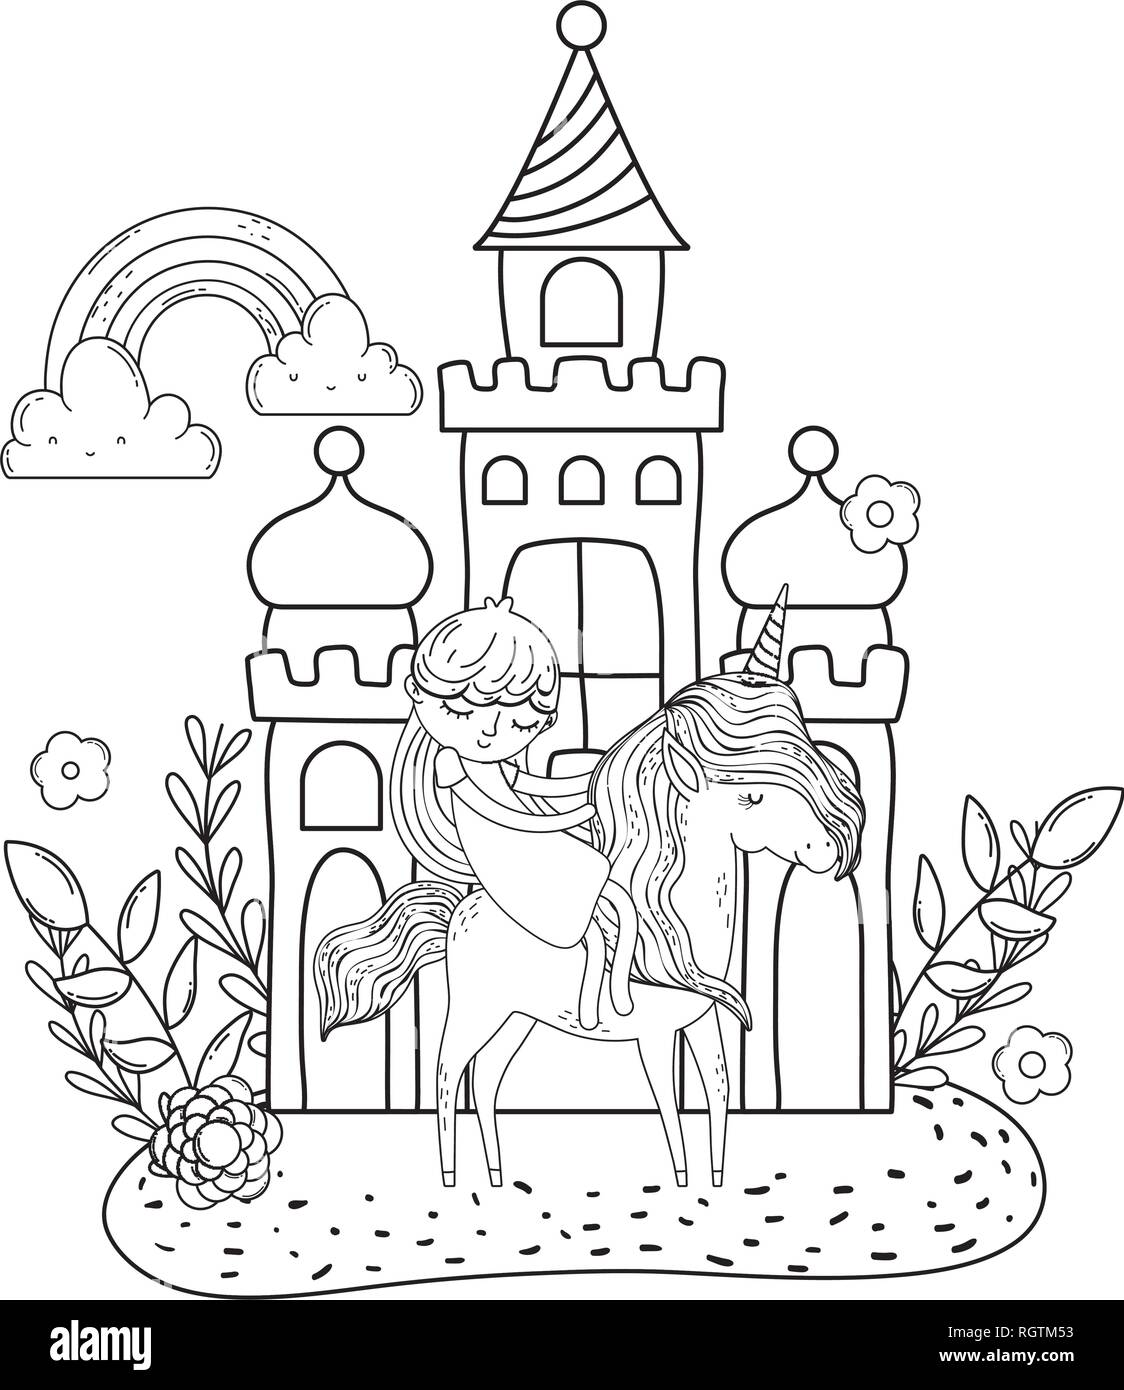 Einhorn und Prinzessin im Schloss mit Regenbogen Stock ...